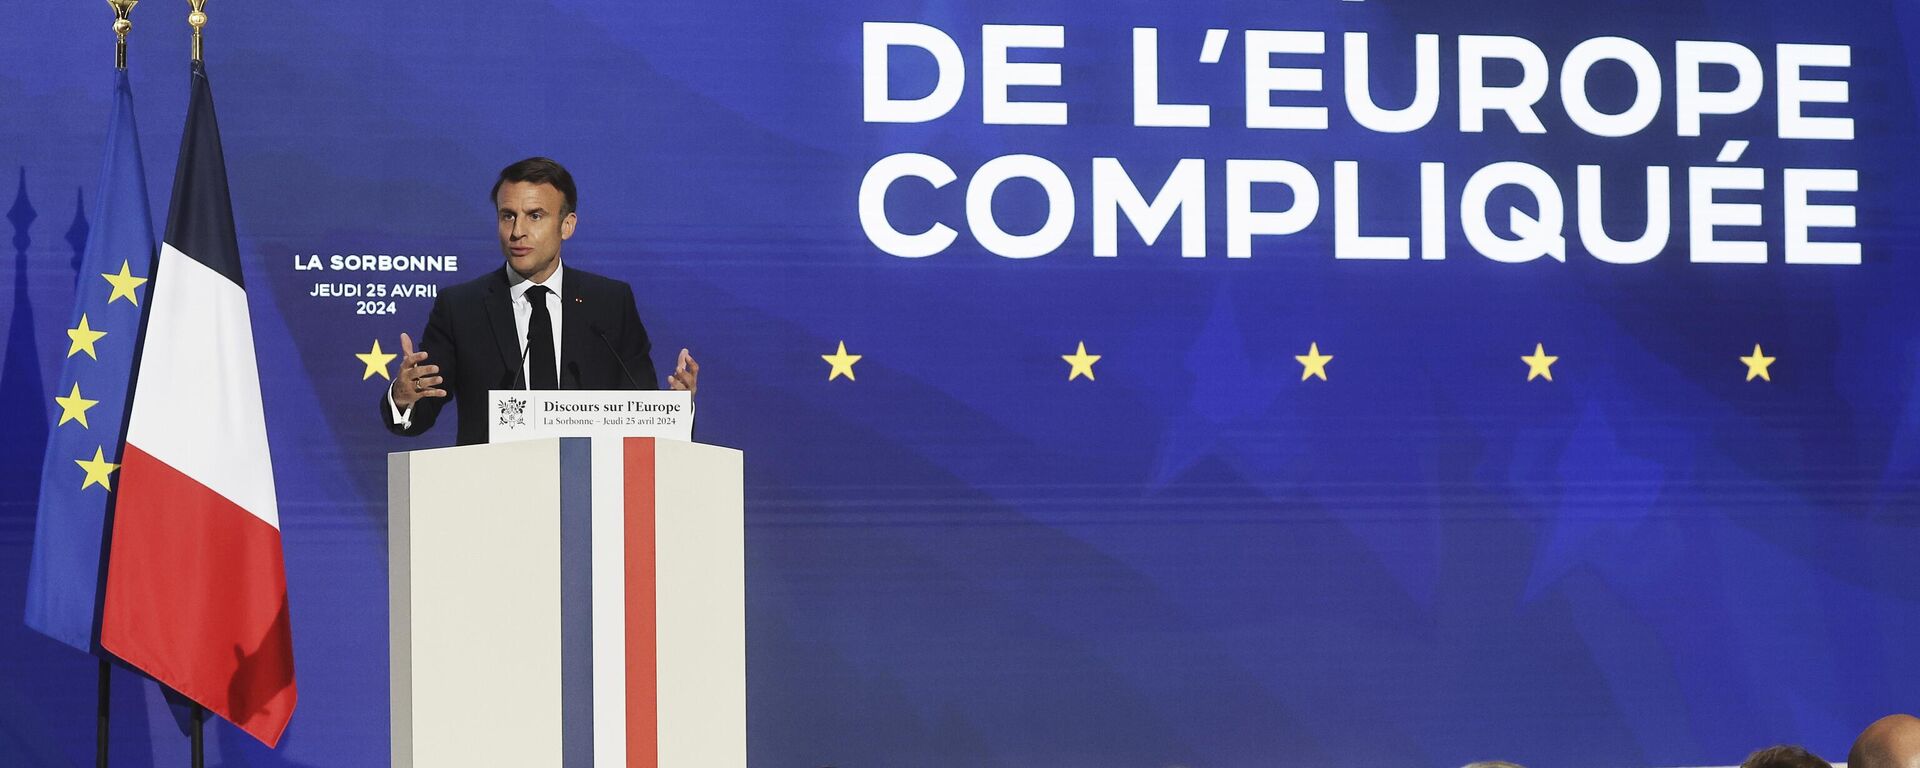 O presidente francês, Emmanuel Macron, faz um discurso sobre a Europa no anfiteatro da Universidade Sorbonne, quinta-feira, 25 de abril, em Paris. 2024 - Sputnik Brasil, 1920, 25.04.2024